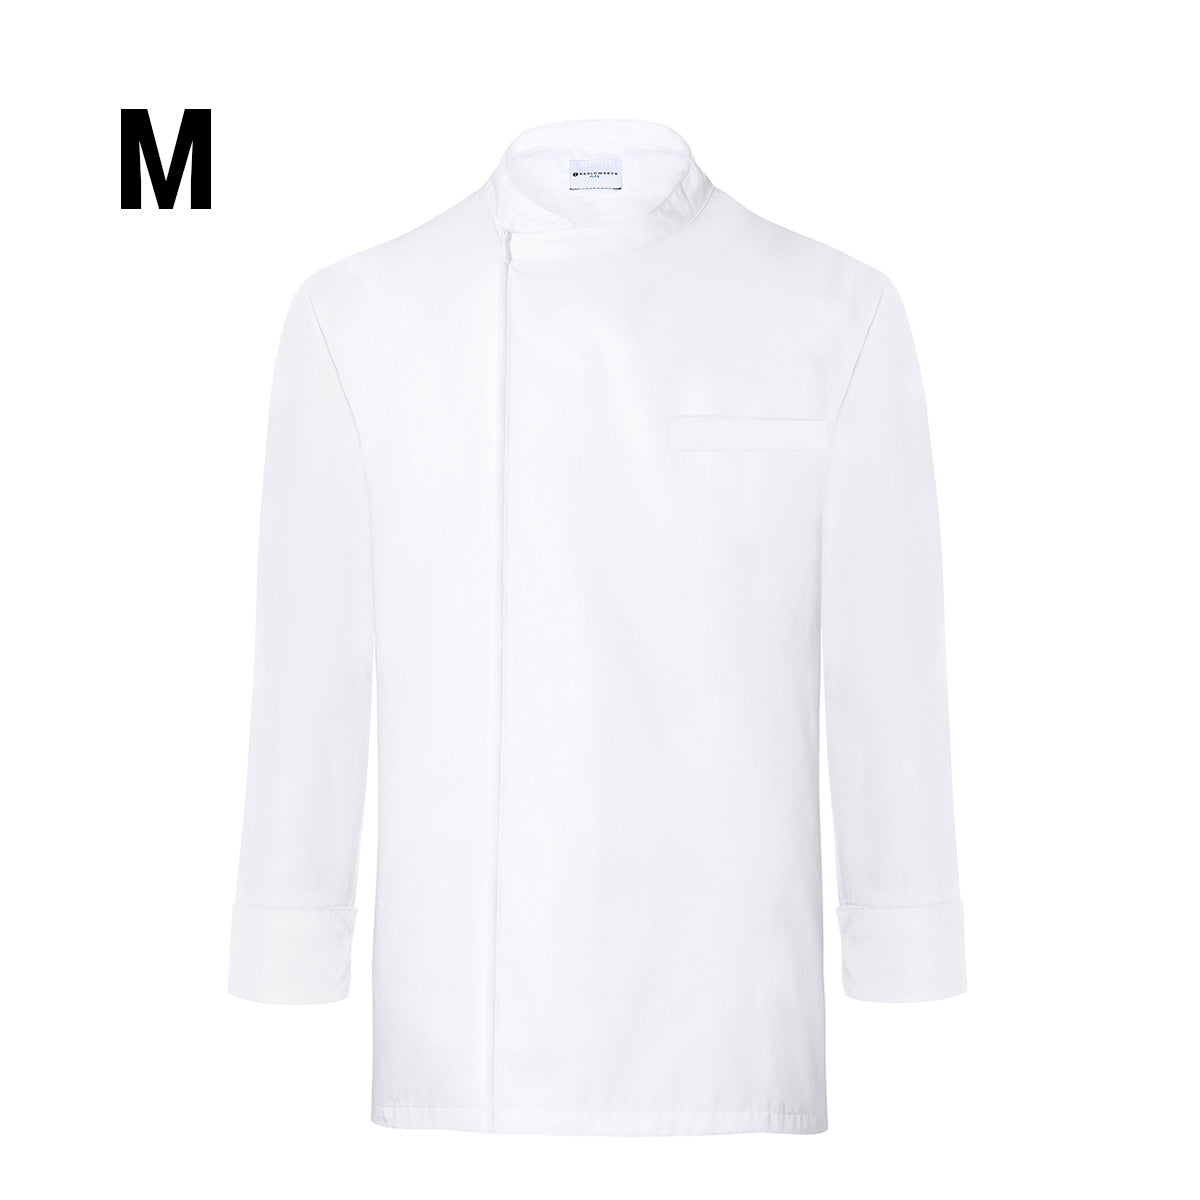 (6 stk) Karlowsky langermet skjorte - hvit - str. M